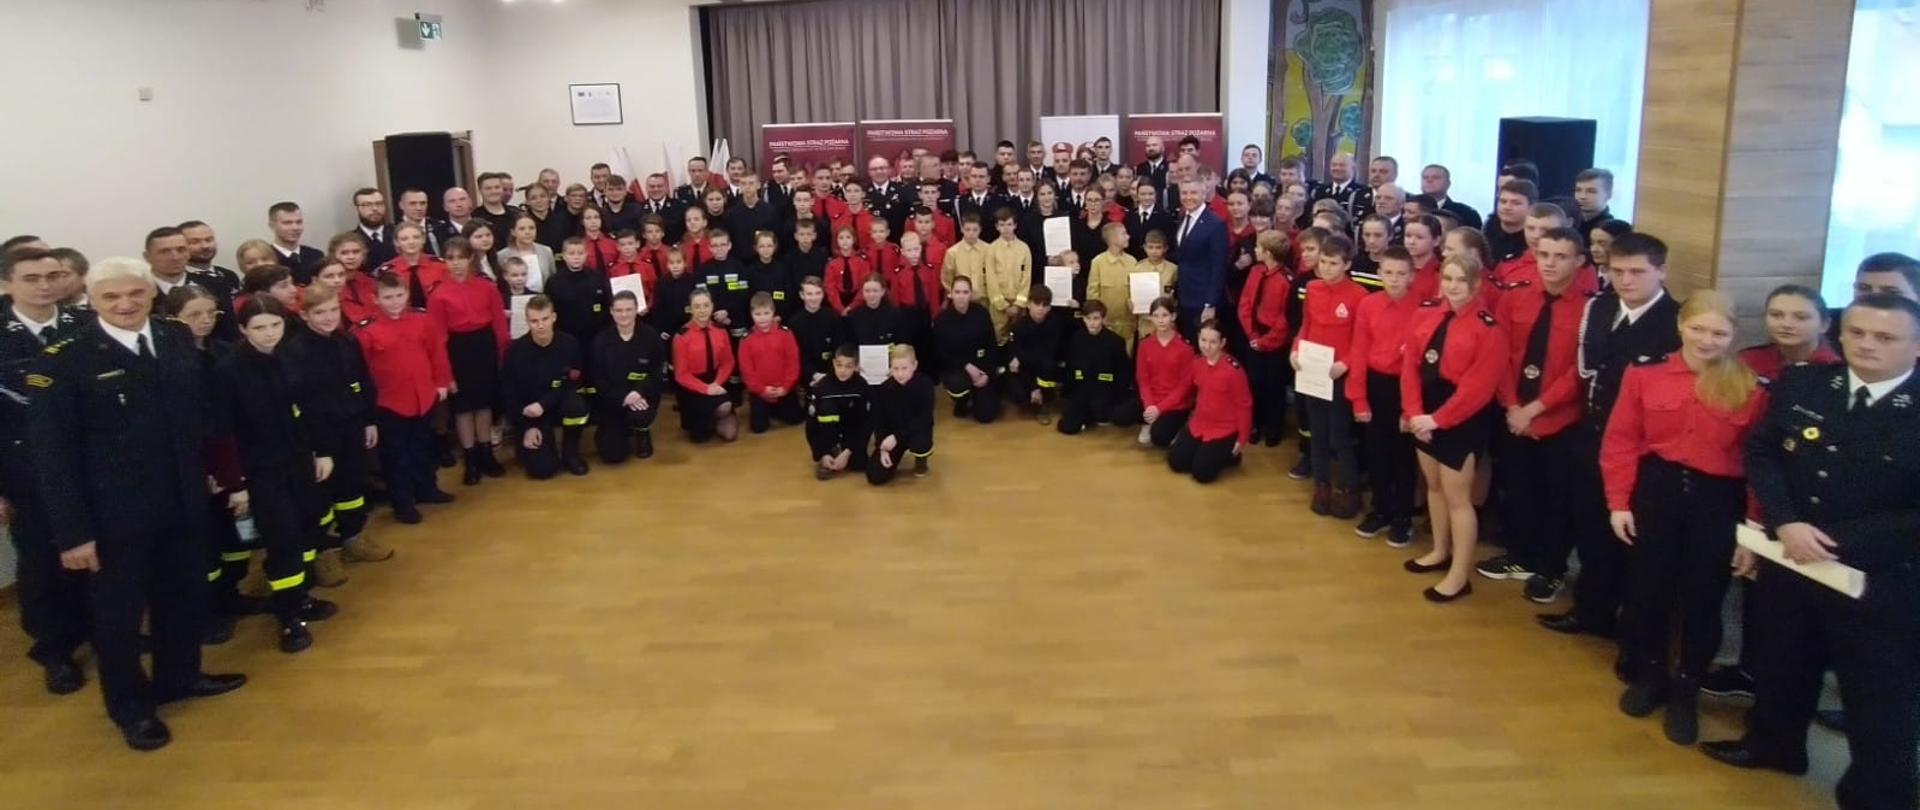 Uroczystość wręczenia promes dotacji celowej dla Ochotniczych Straży Pożarnych na zakup sprzętu dla członków Młodzieżowych Drużyn Pożarniczych z terenu Bielska-Białej i powiatu bielskiego